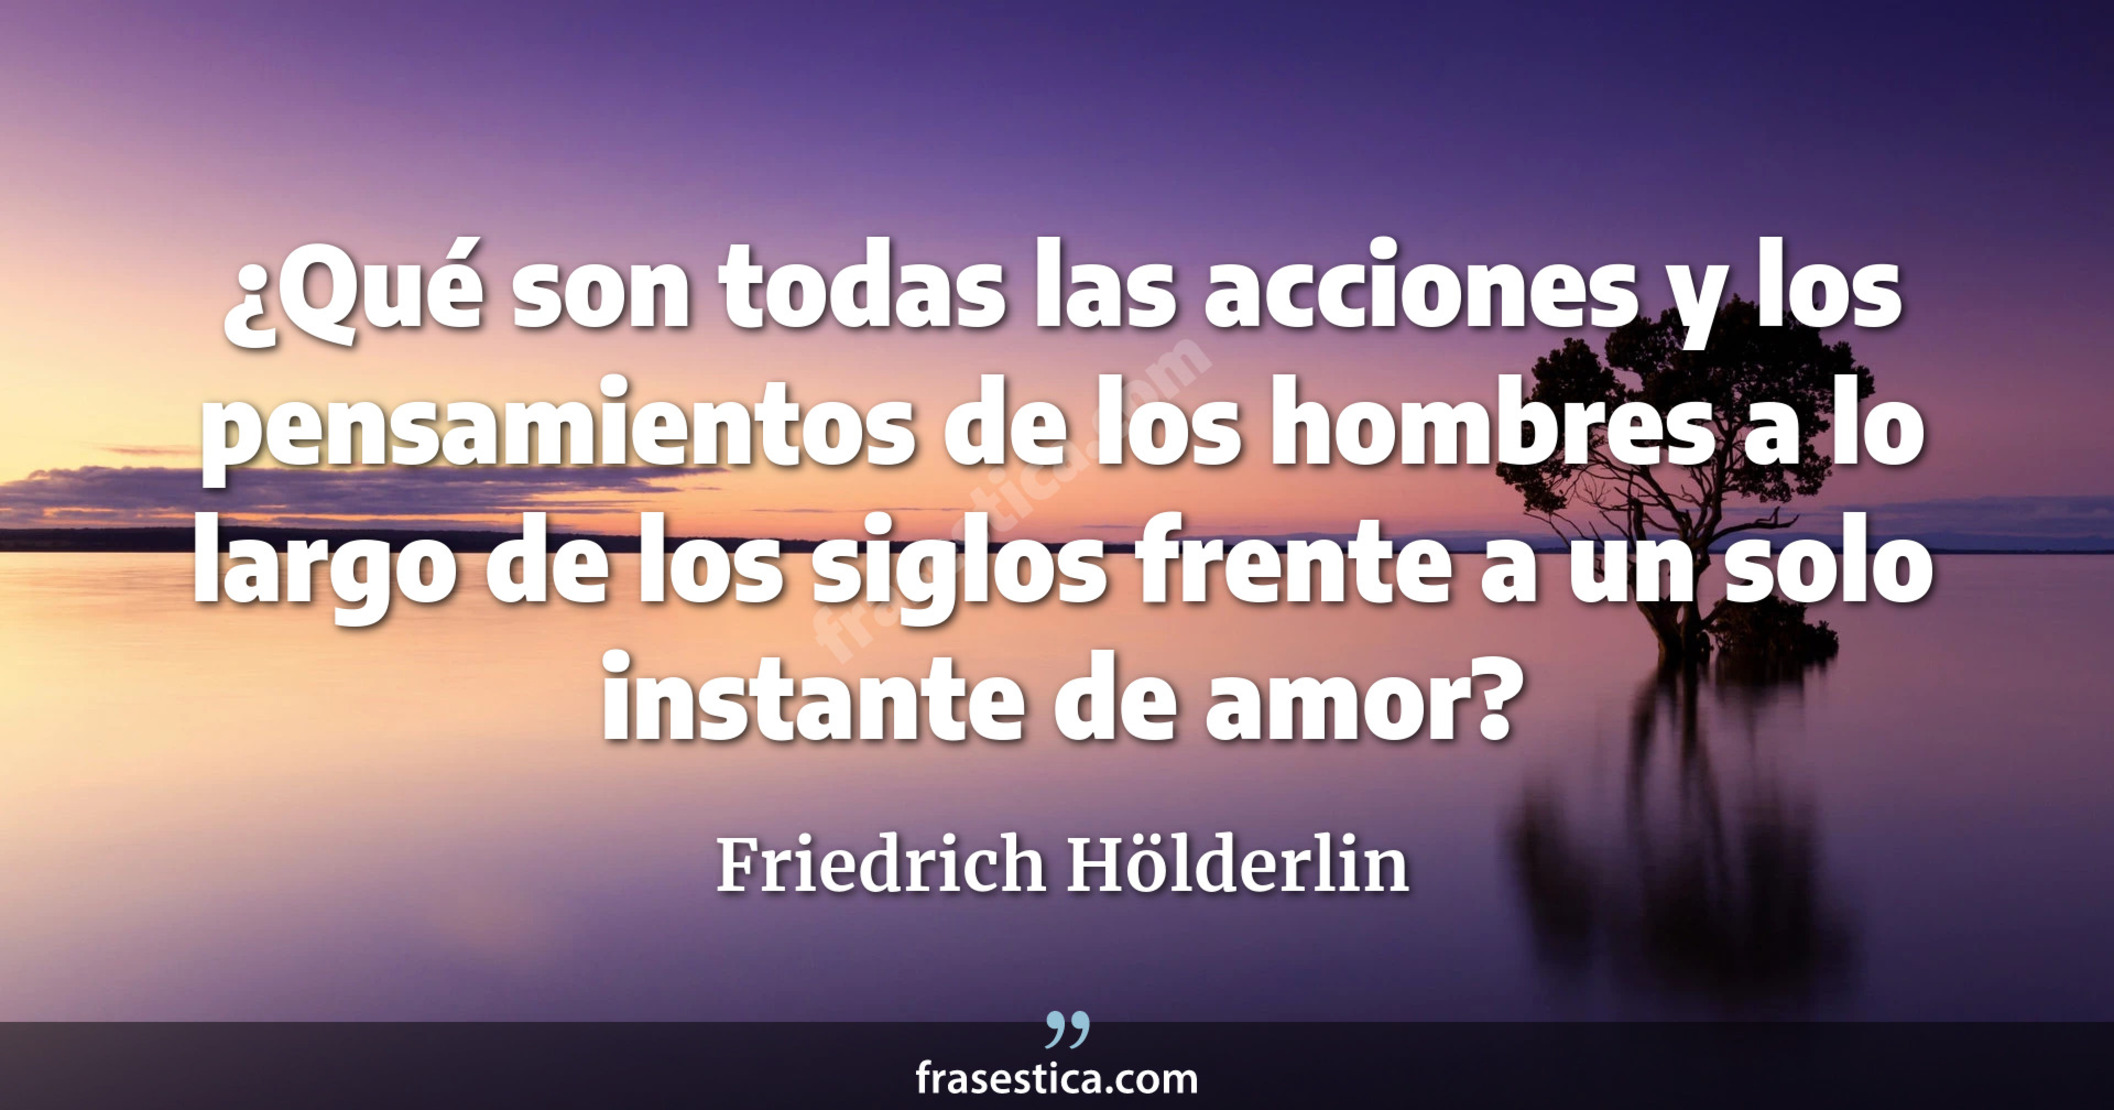 ¿Qué son todas las acciones y los pensamientos de los hombres a lo largo de los siglos frente a un solo instante de amor? - Friedrich Hölderlin